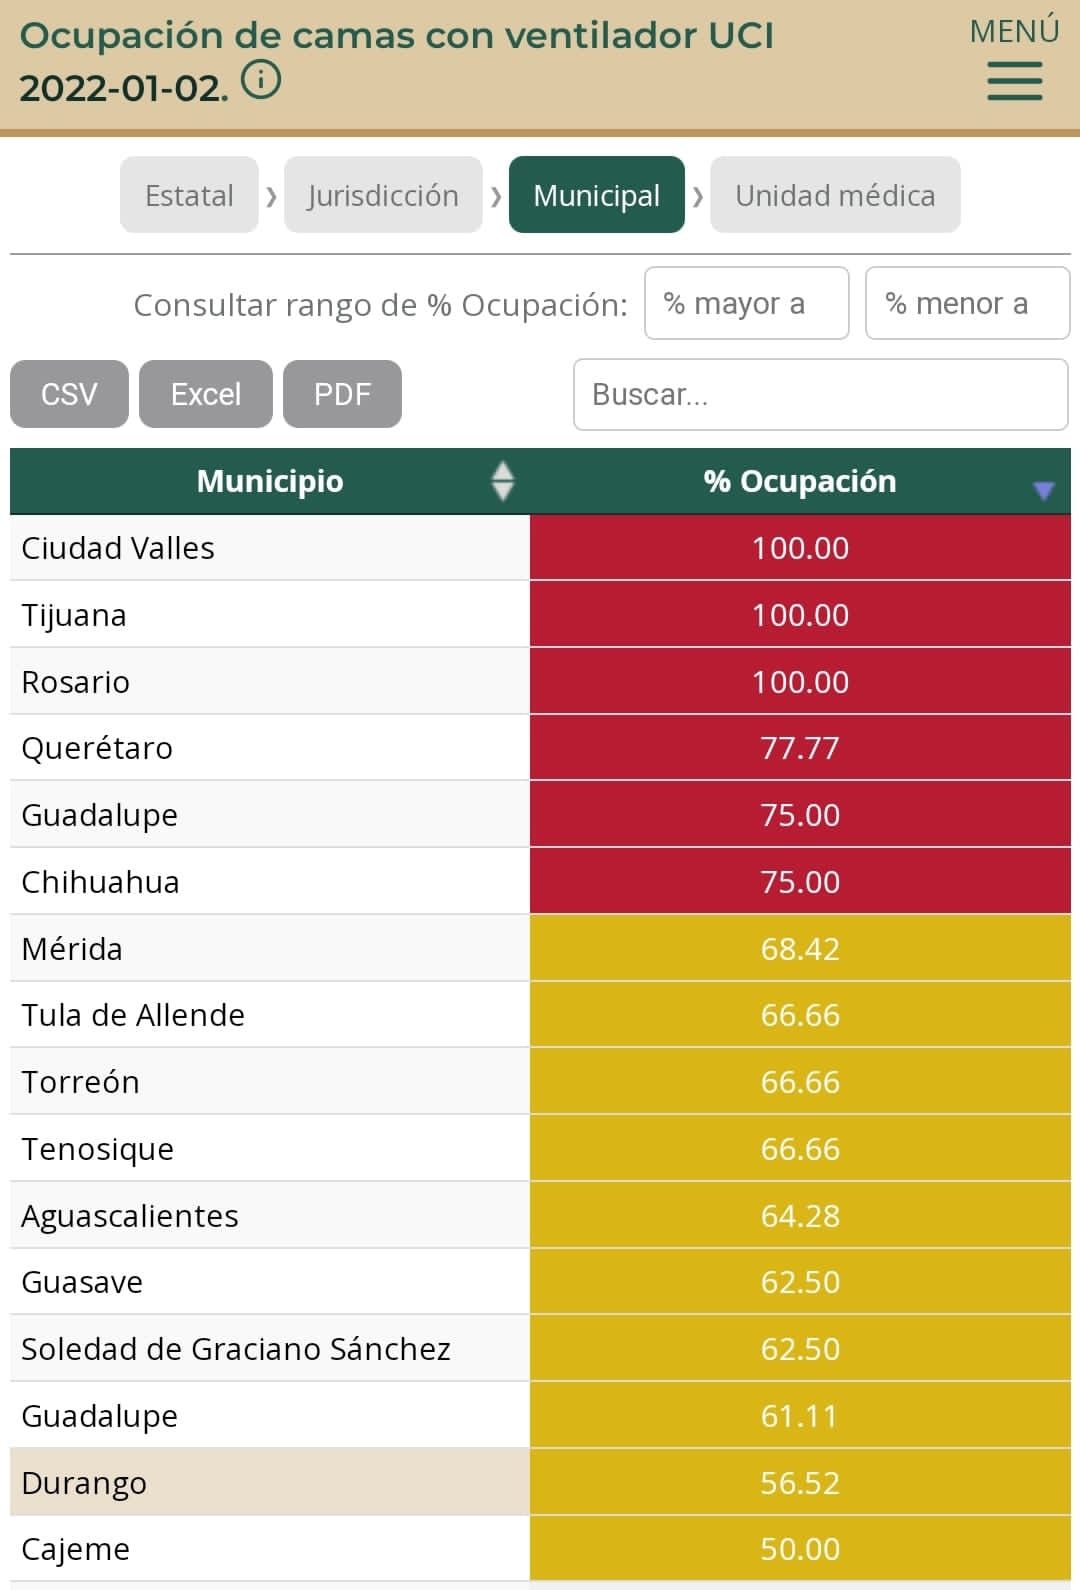 Ciudad Valles, Tijuana, Querétaro, Mérida y Chihuahua, municipios con elevada carga de pacientes hospitalizados e intubados en Unidades de Cuidados Intensivos